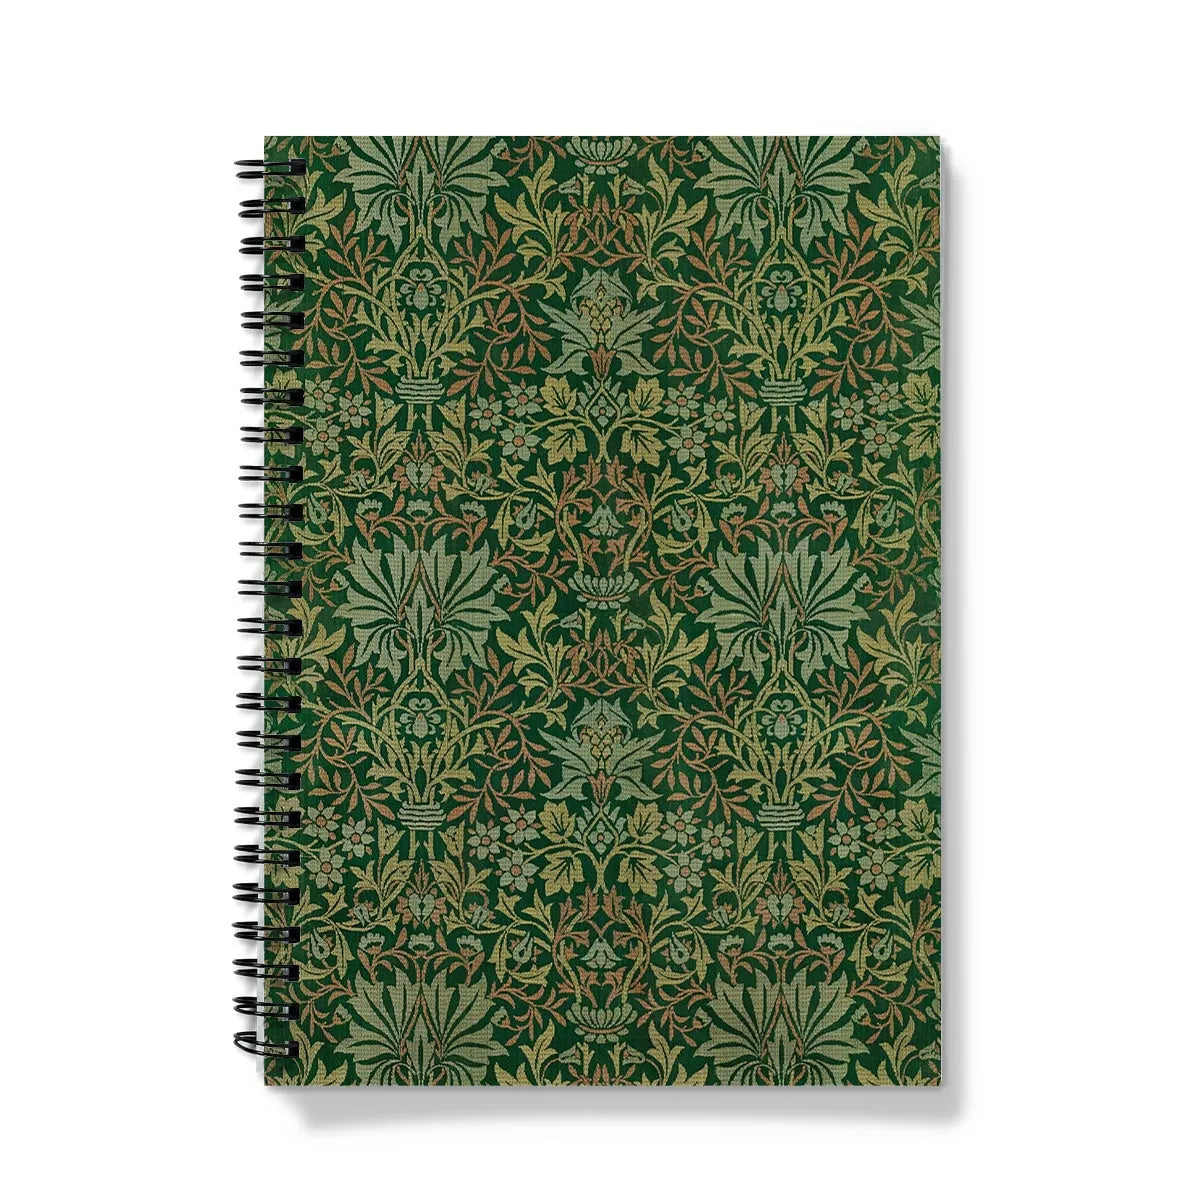 Flower Garden By William Morris Notebook - A5 - Graph Paper - Notebooks & Notepads - Aesthetic Art